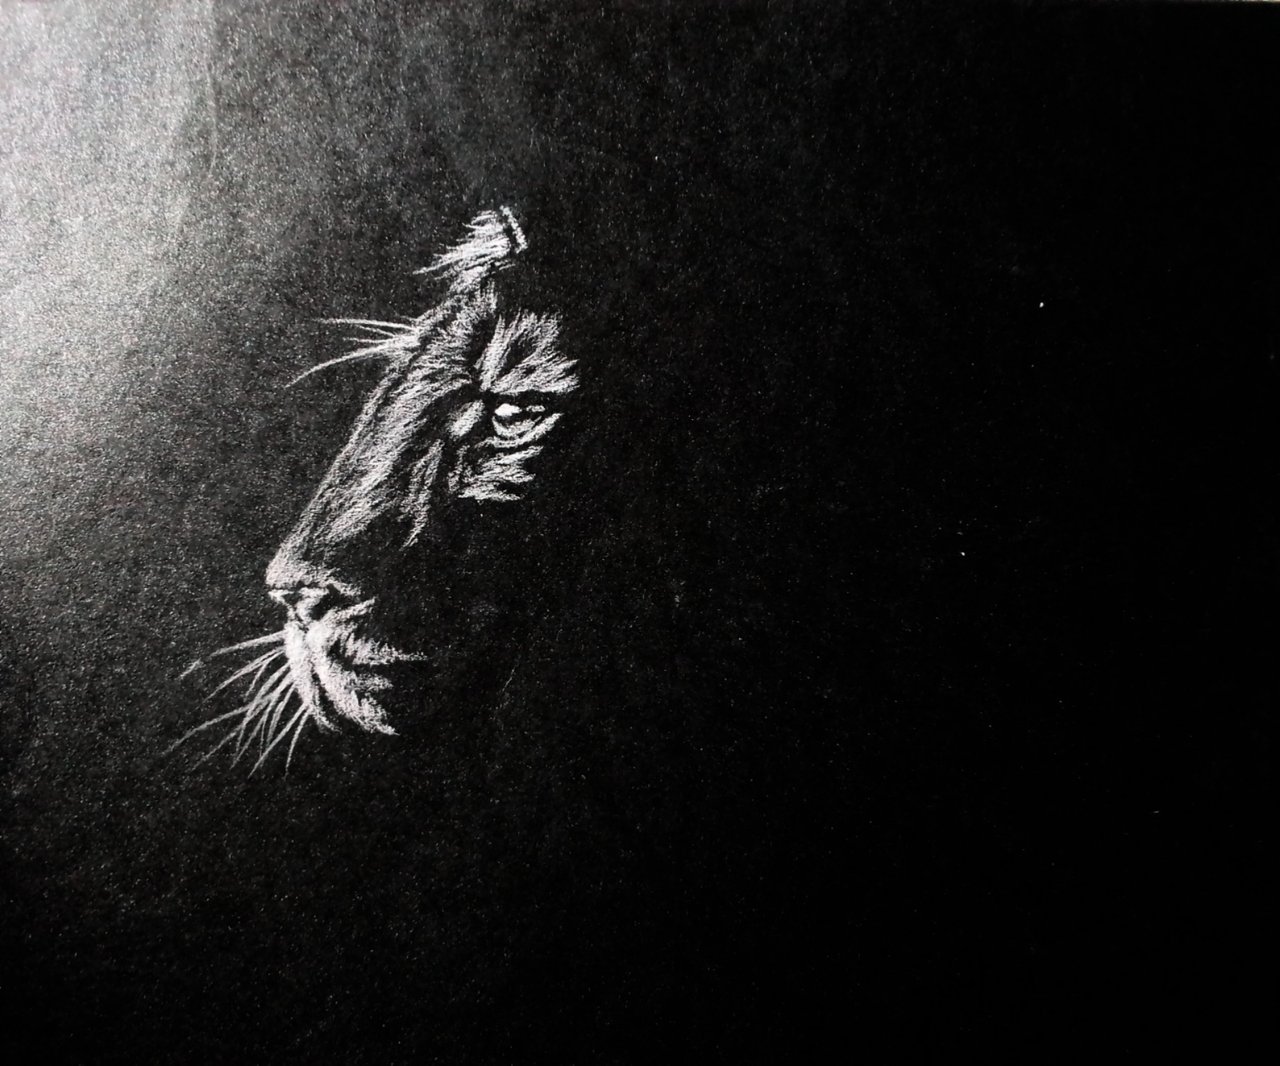 A Vigilant Nap, Charcoal on Toned Paper - Portraits of Animals